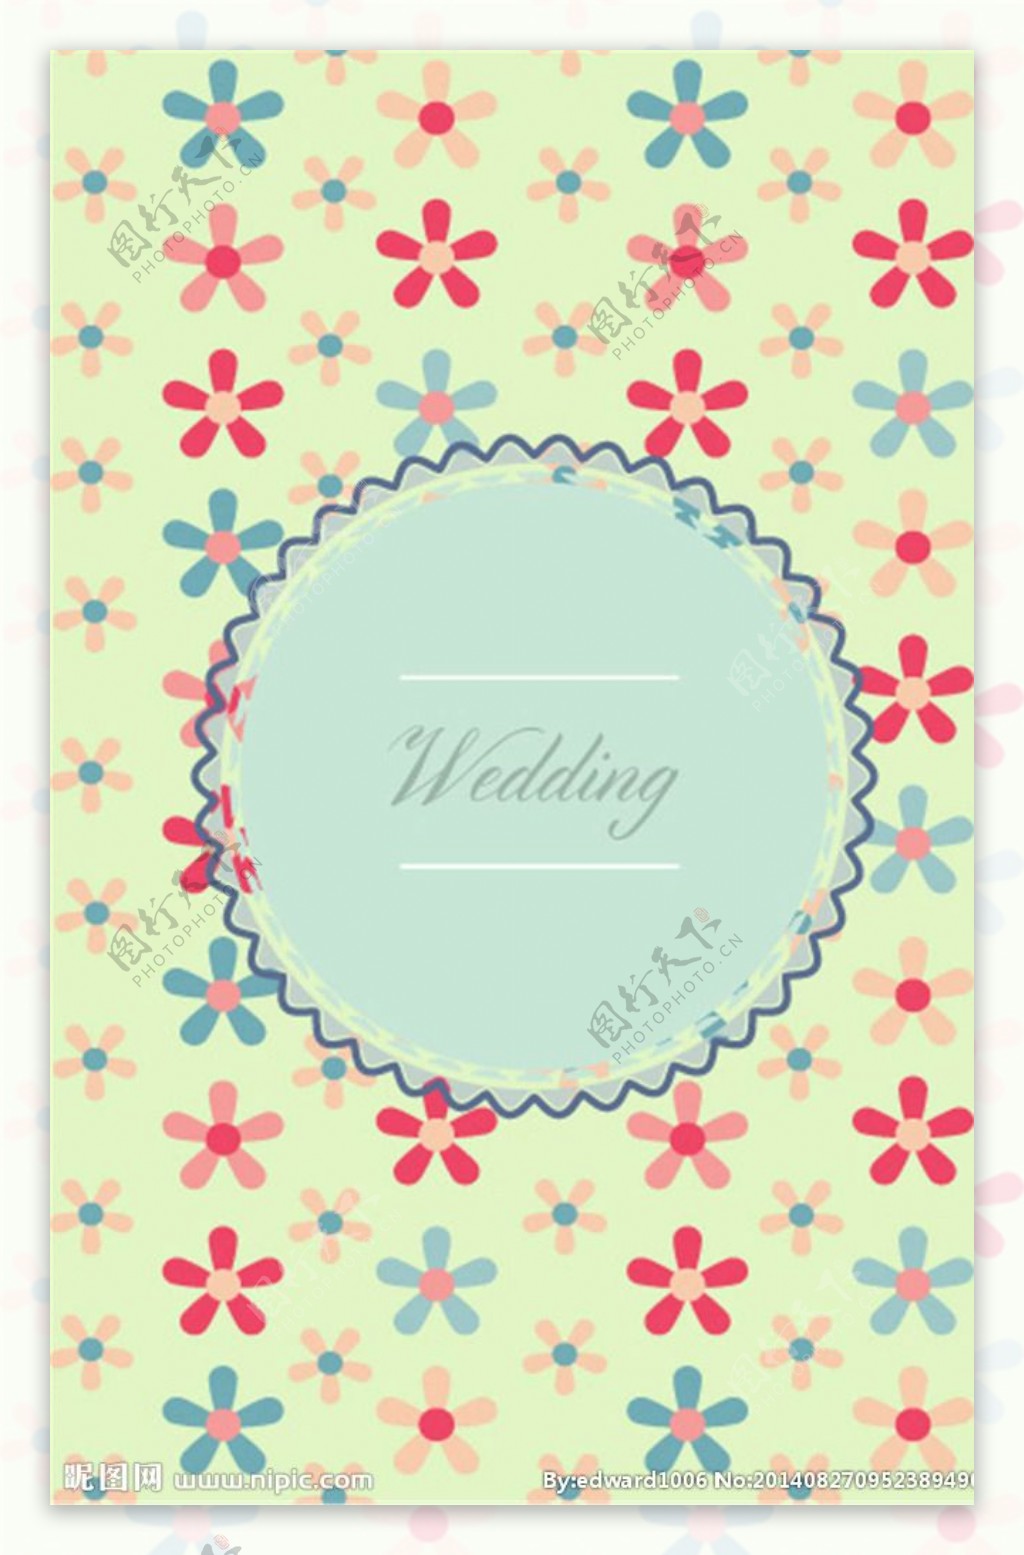 婚礼结婚海报设计图片